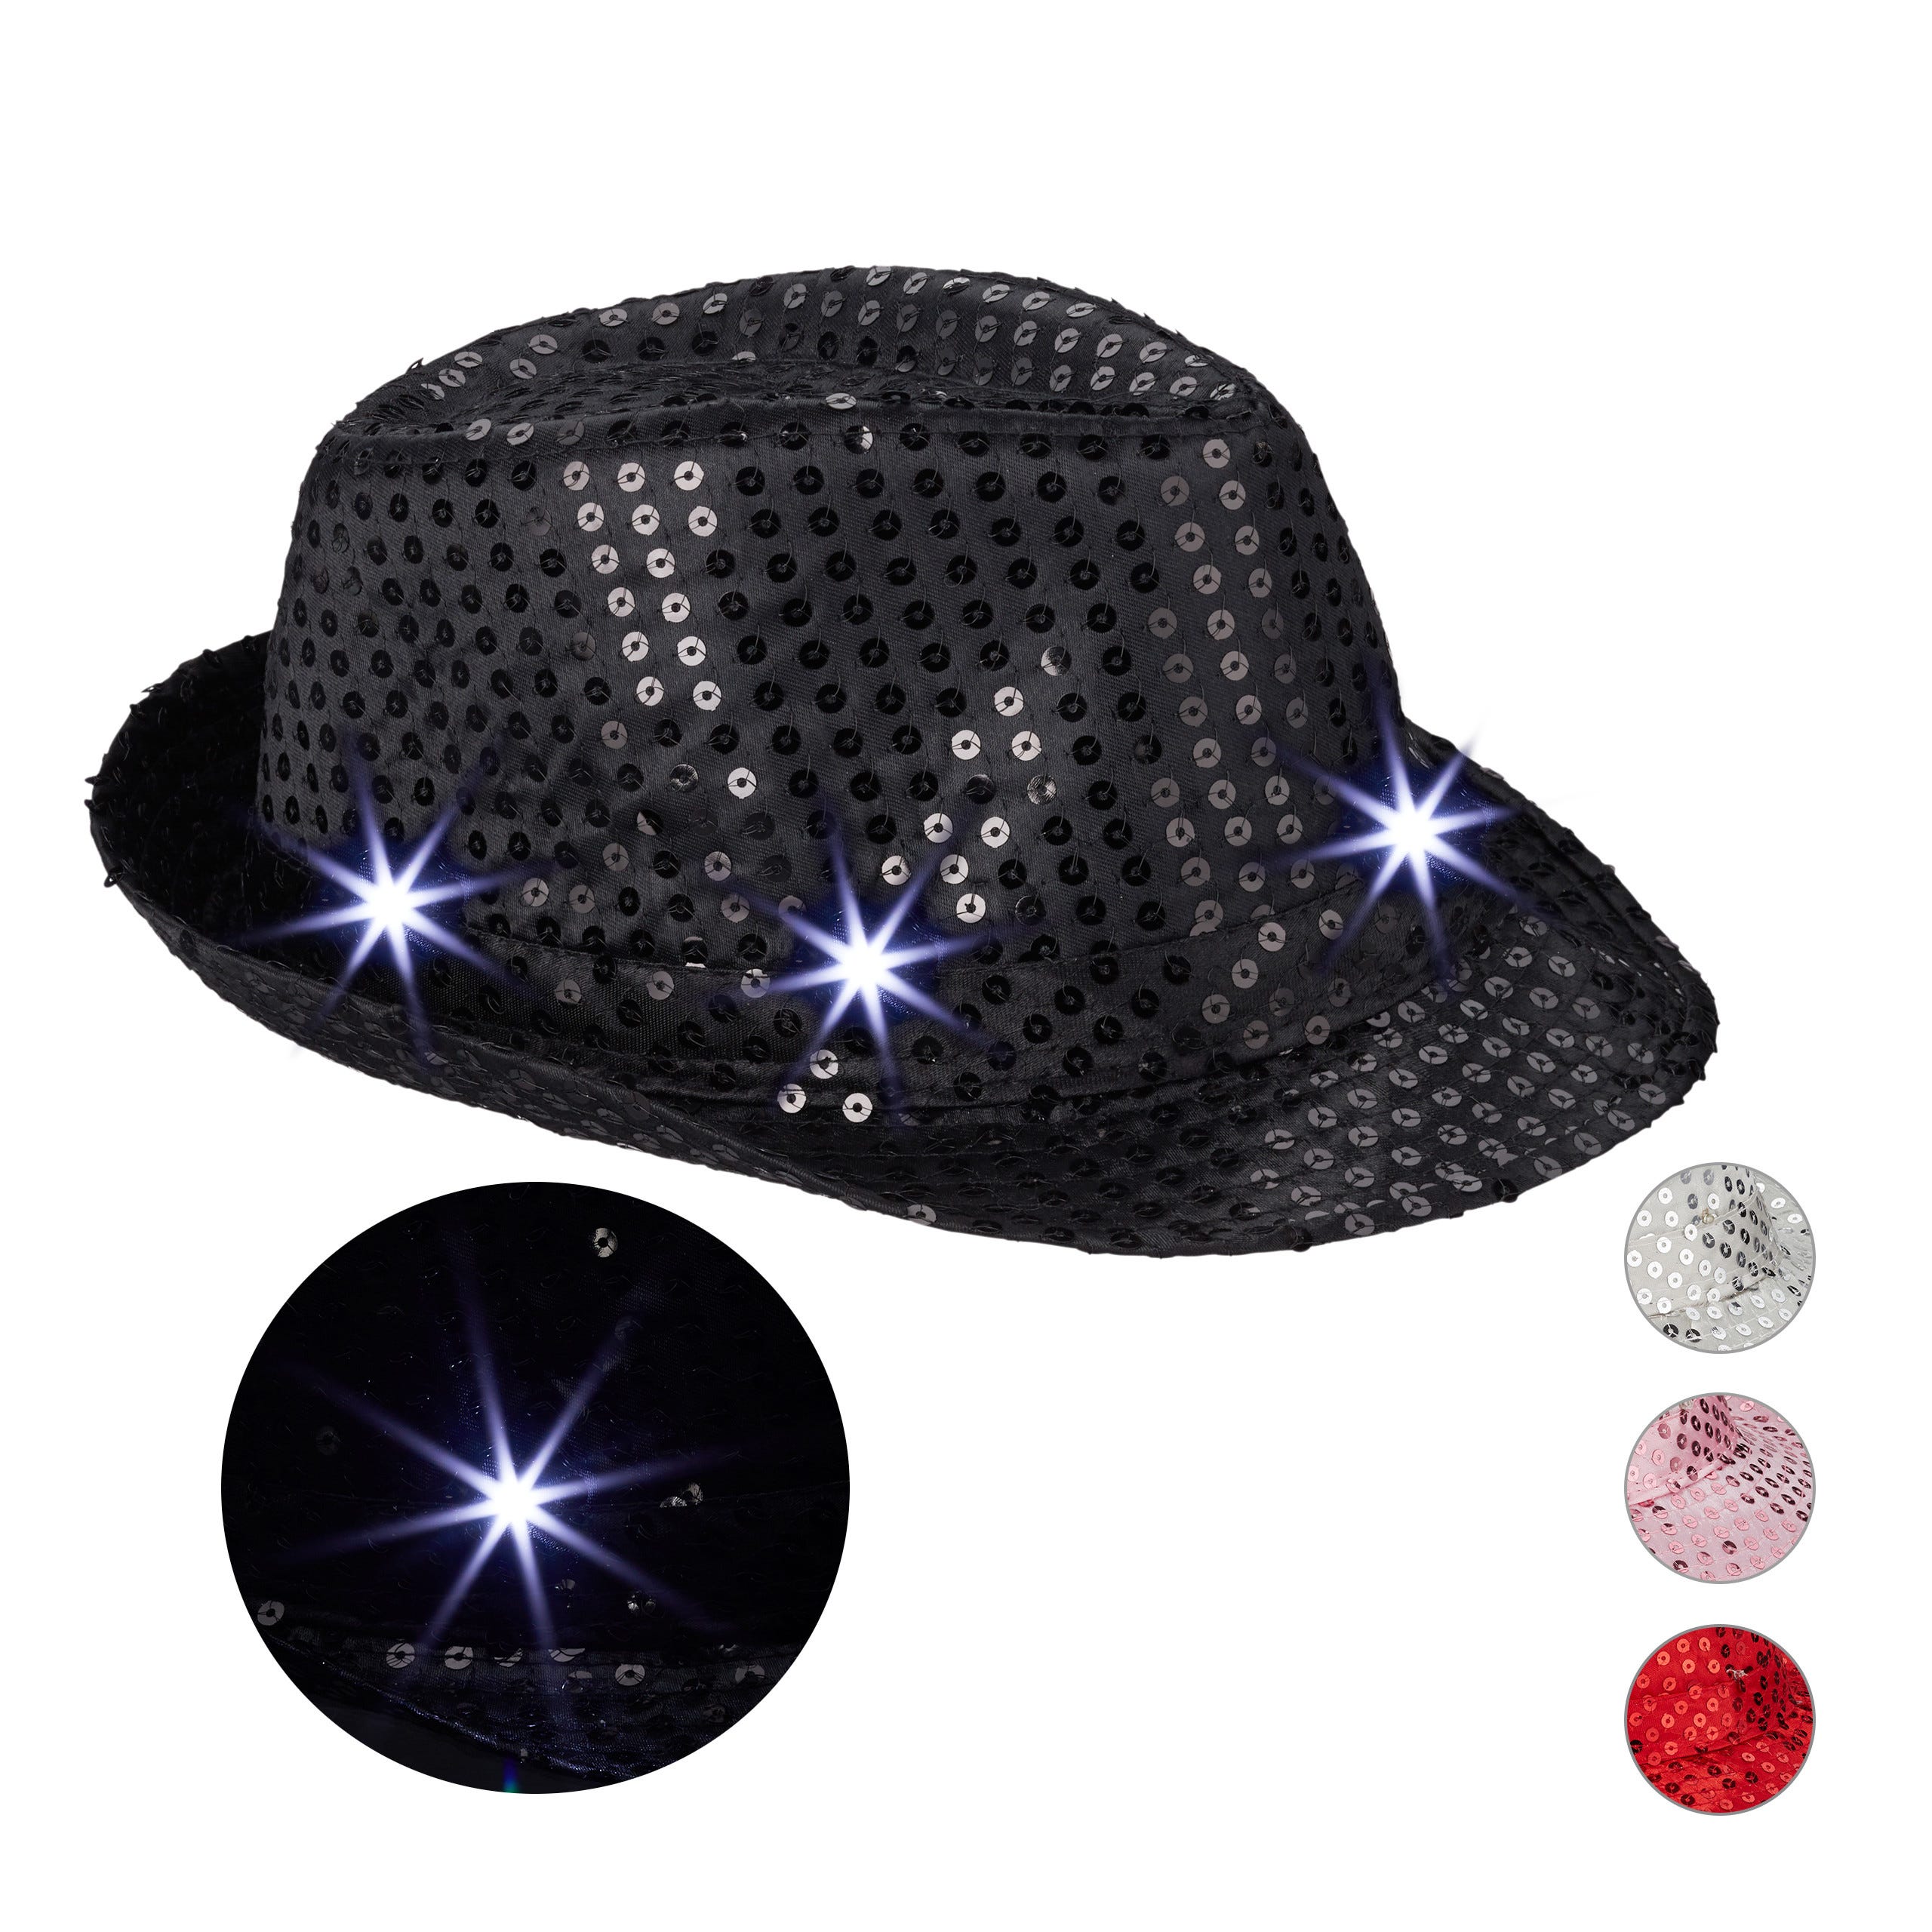 1x Chapeau Paillettes, 6 LED, clignotantes, sequin, homme & femme, fête,  EVG/EVFJ, taille unique, noir